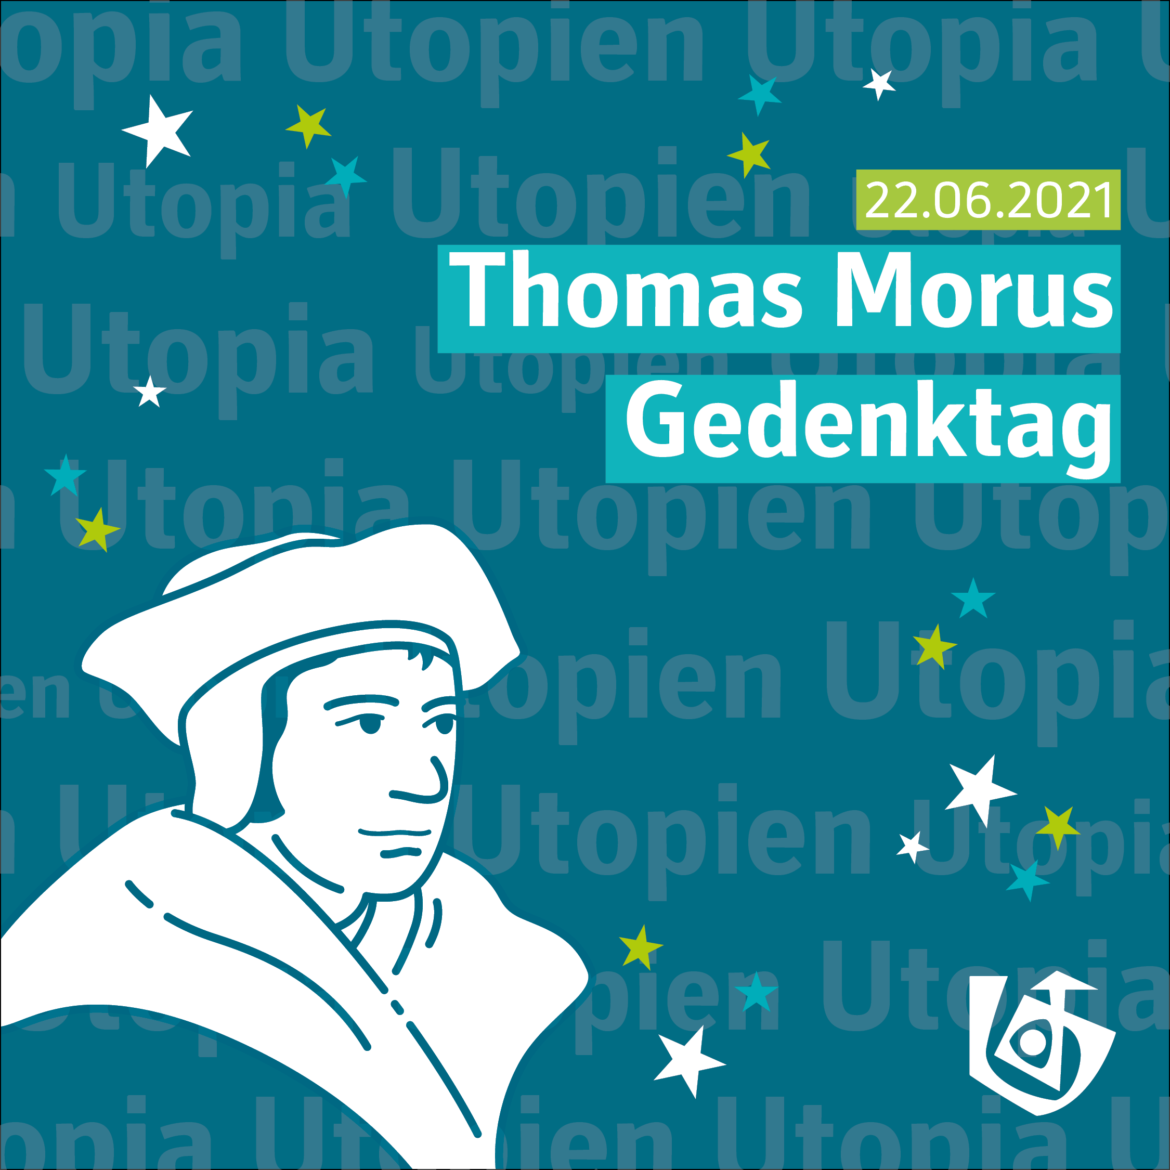 Thomas Morus Gedenktag ist der 22.06.